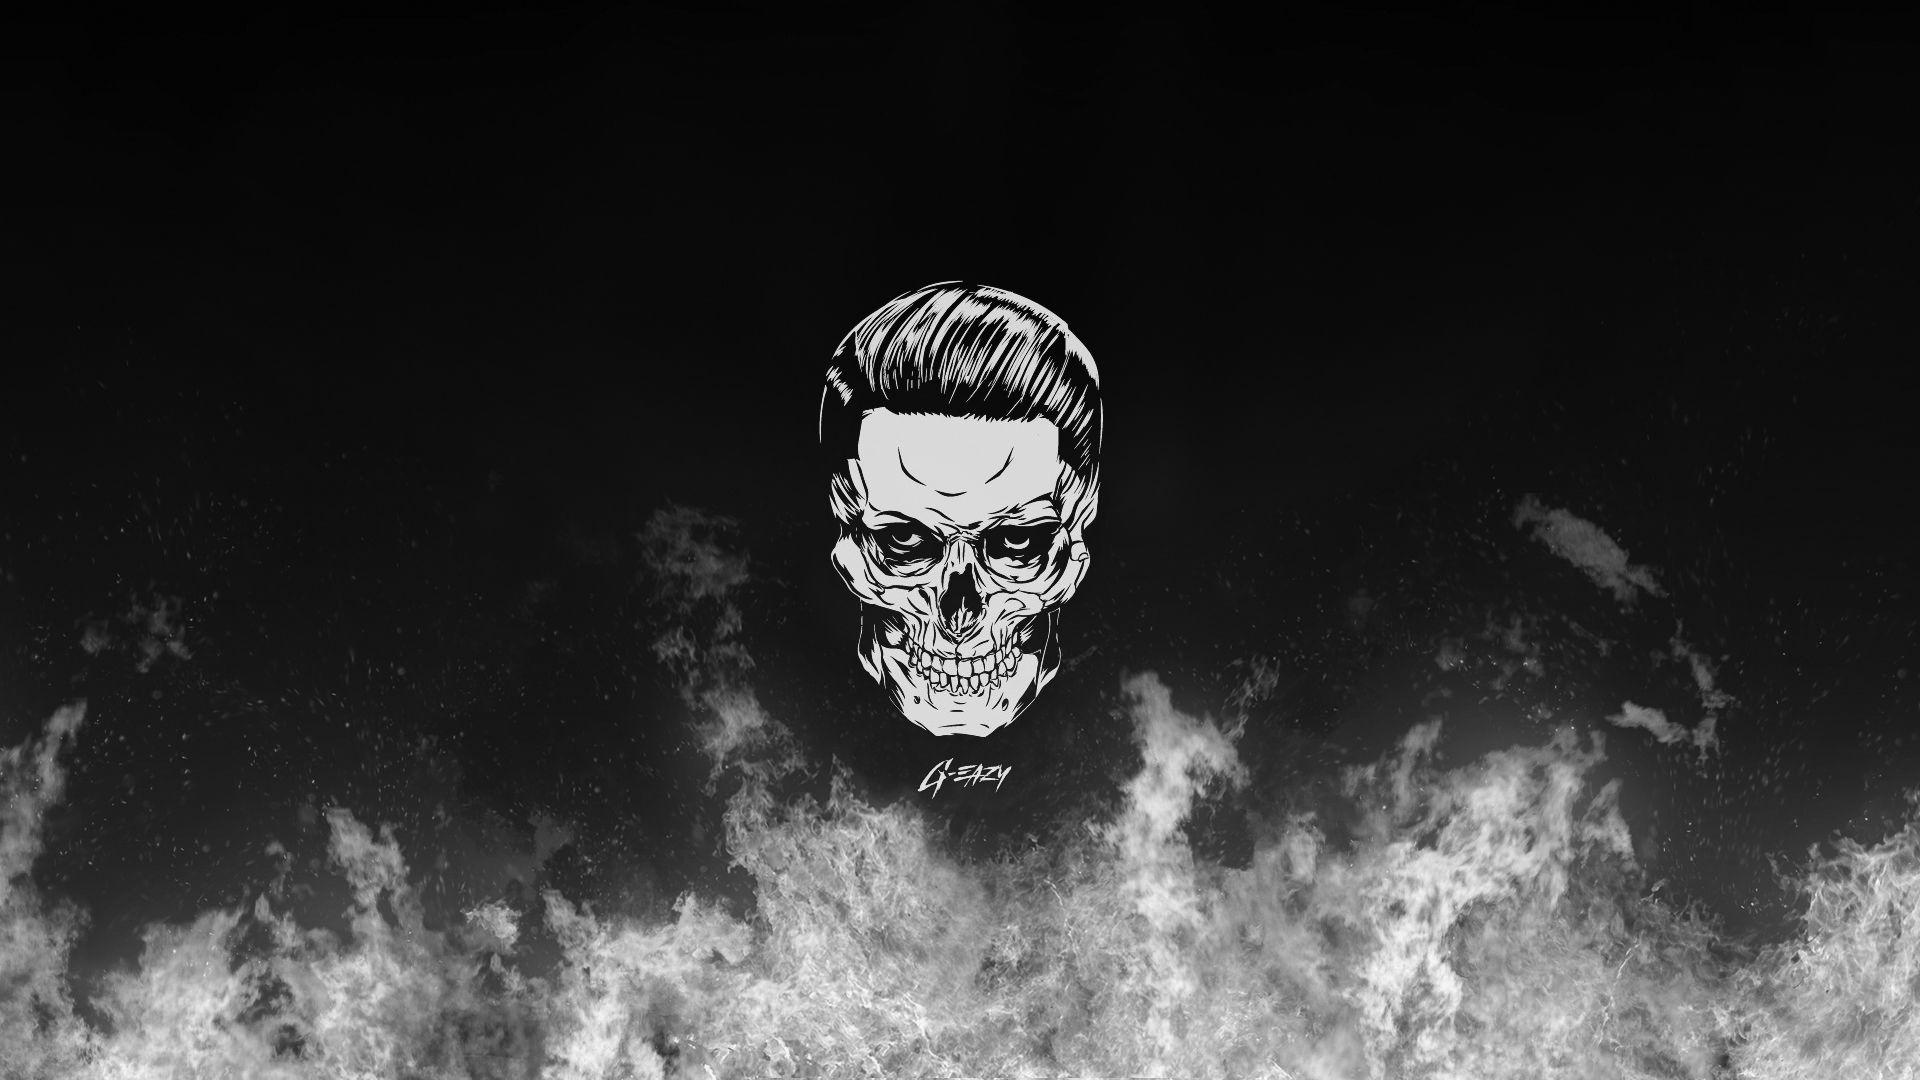 G Eazy Skull [1920x1080] [OC]. Wallpaper In 2019